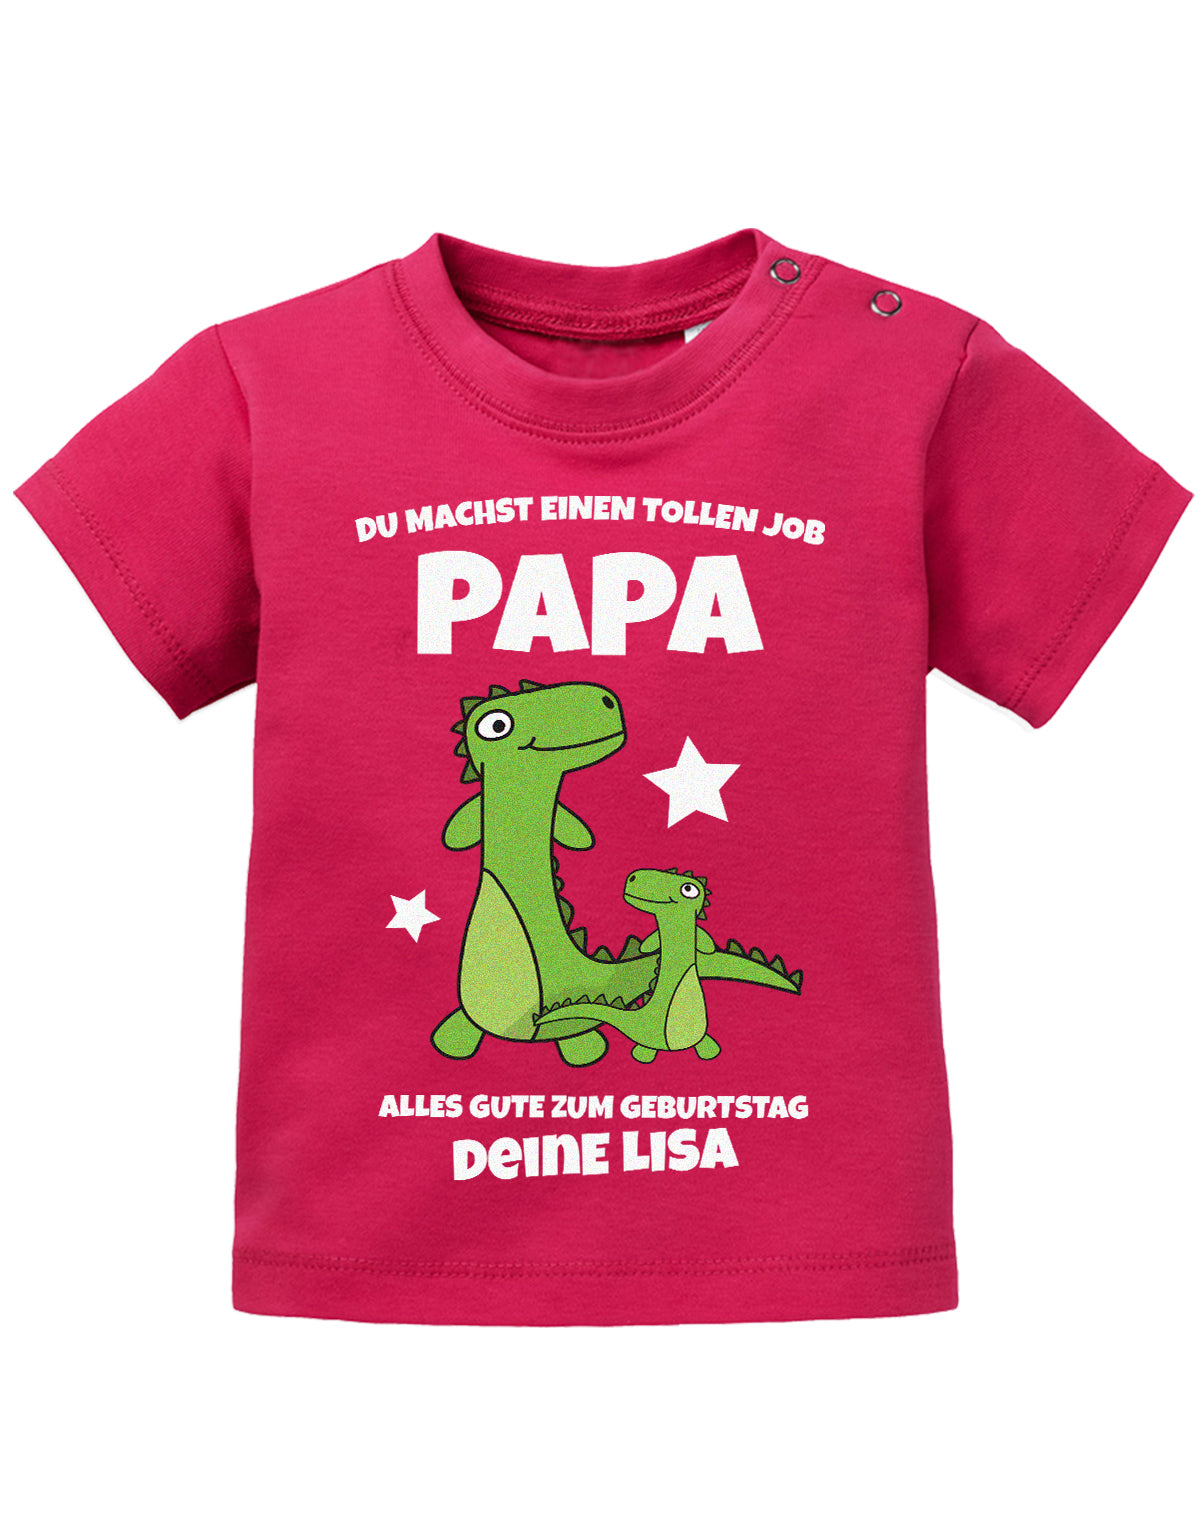 Papa Spruch Baby Shirt. Du machst einen tollen Job, Papa. Alles Gute zum Geburtstag. Personalisiert mit Namen. Sorbet